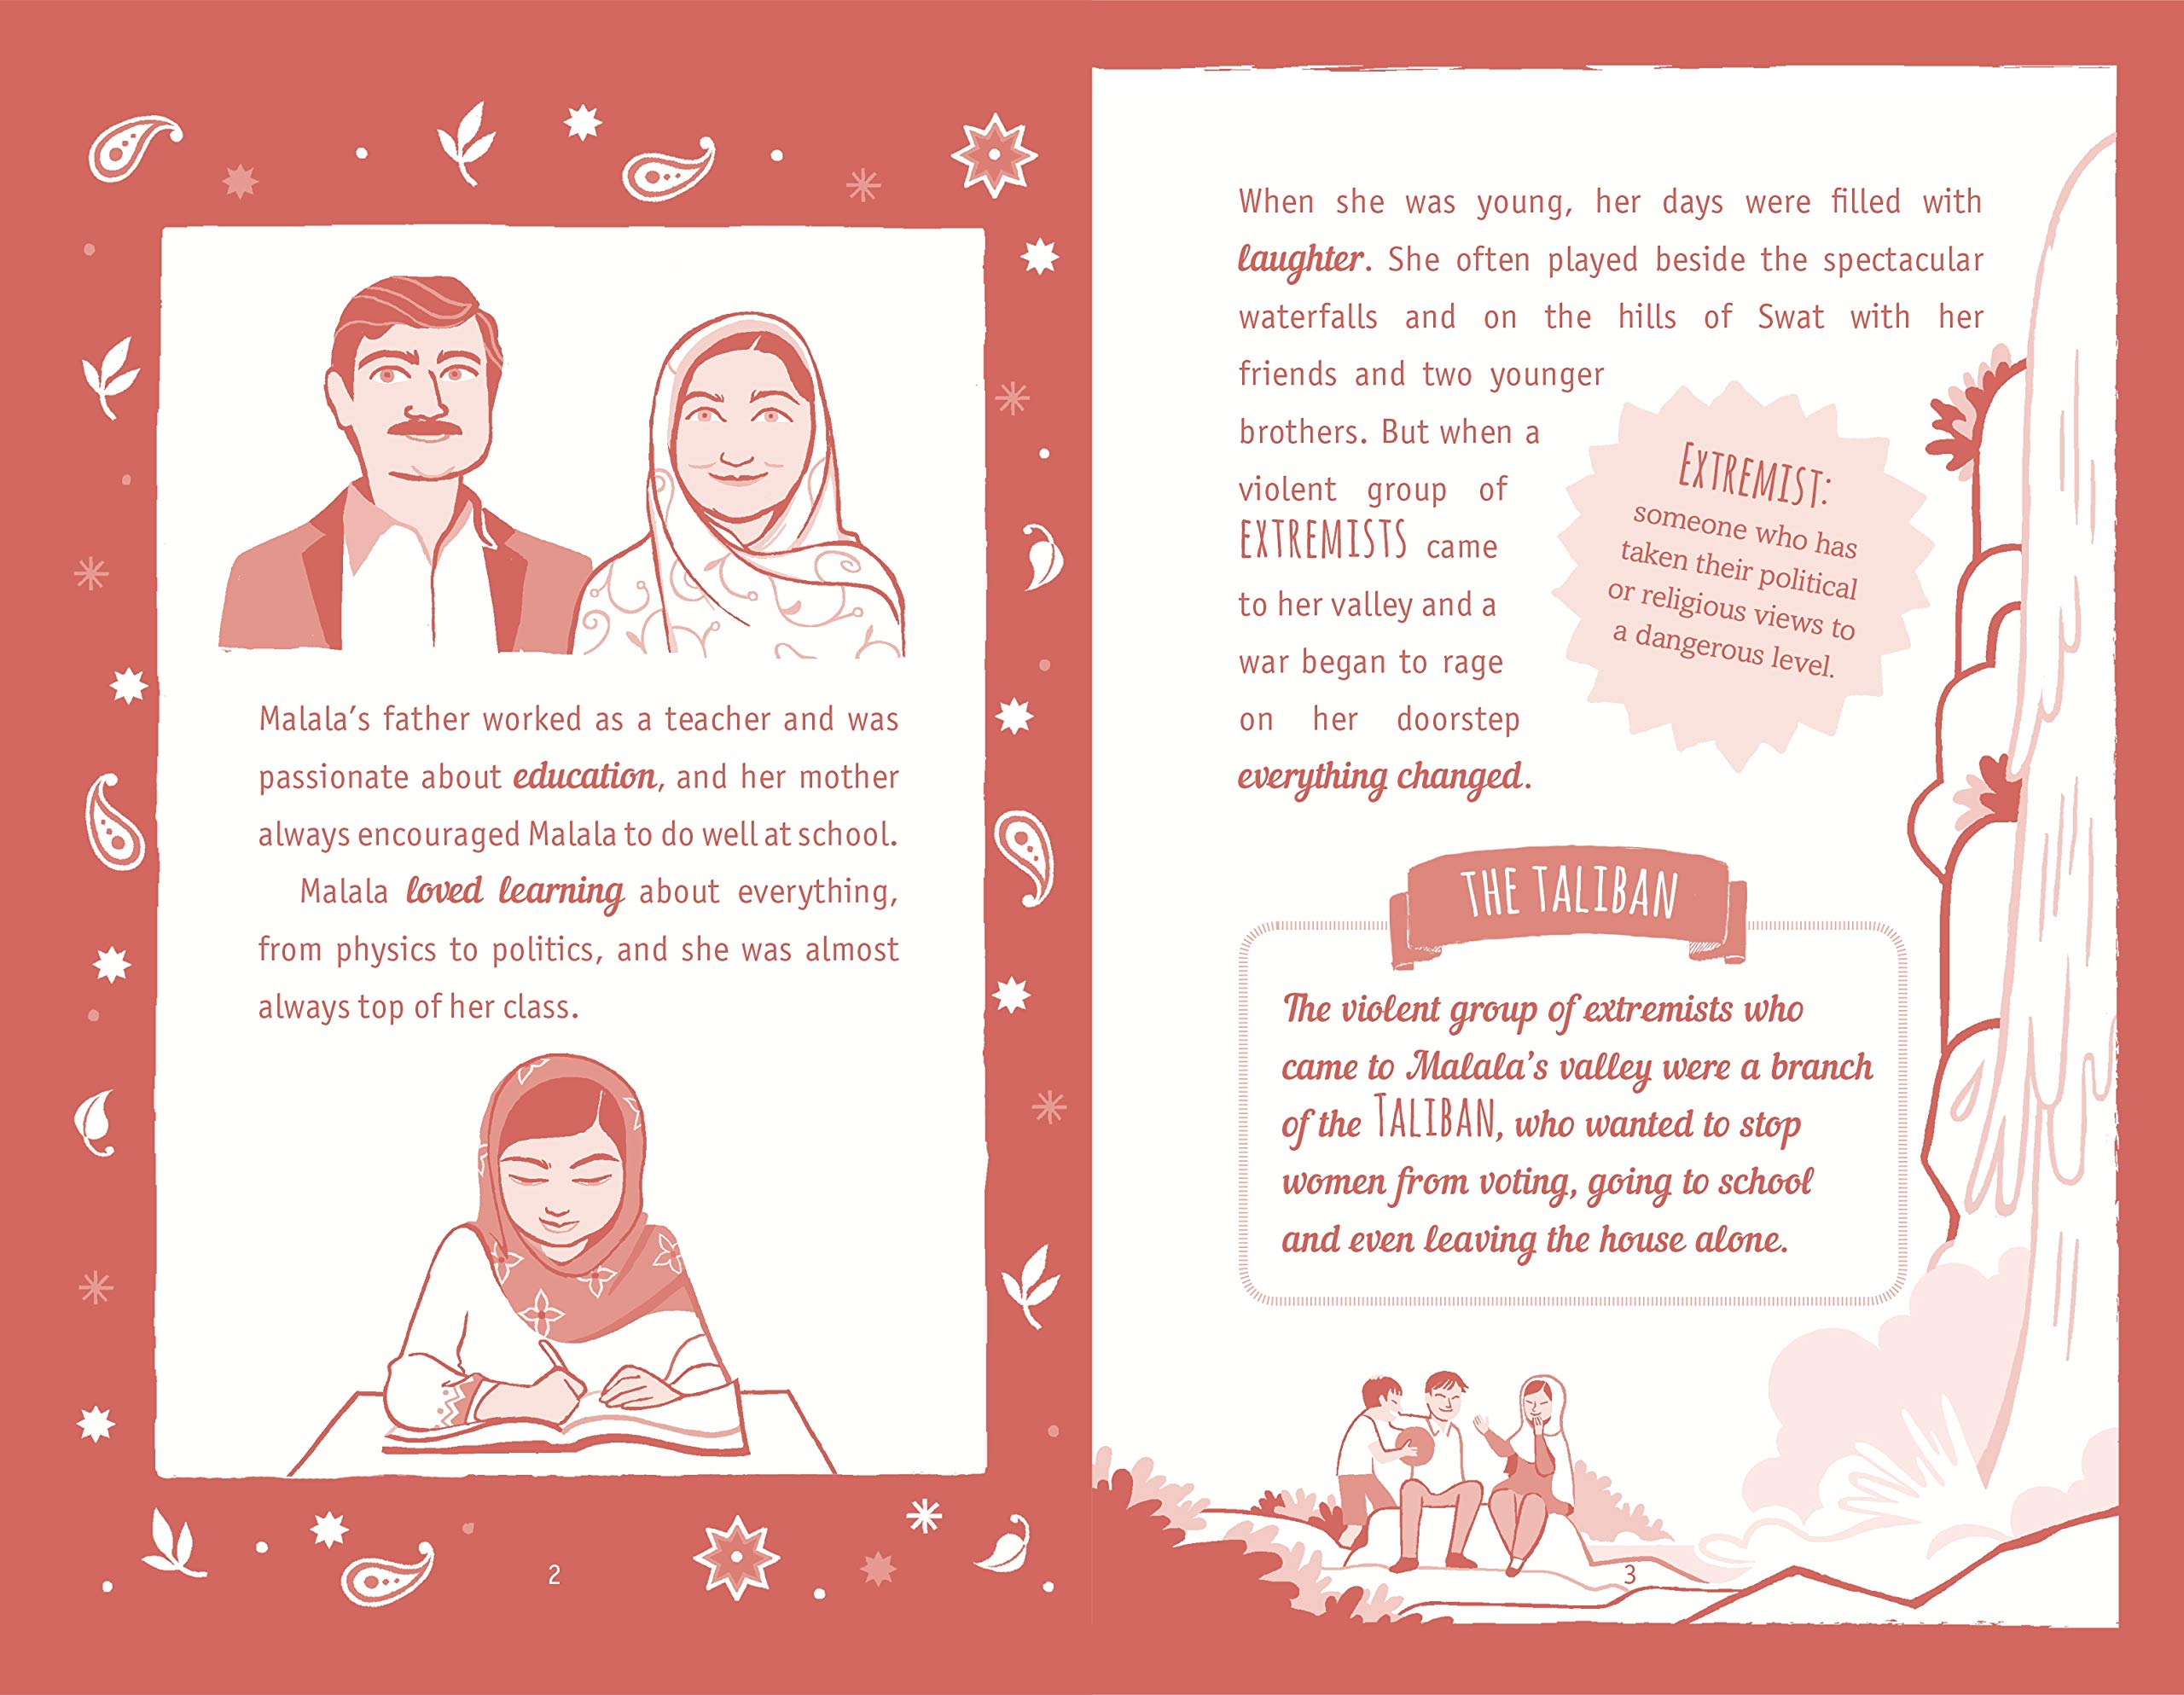 The Extraordinary Life of Malala Yousafzai (Extraordinary Lives)